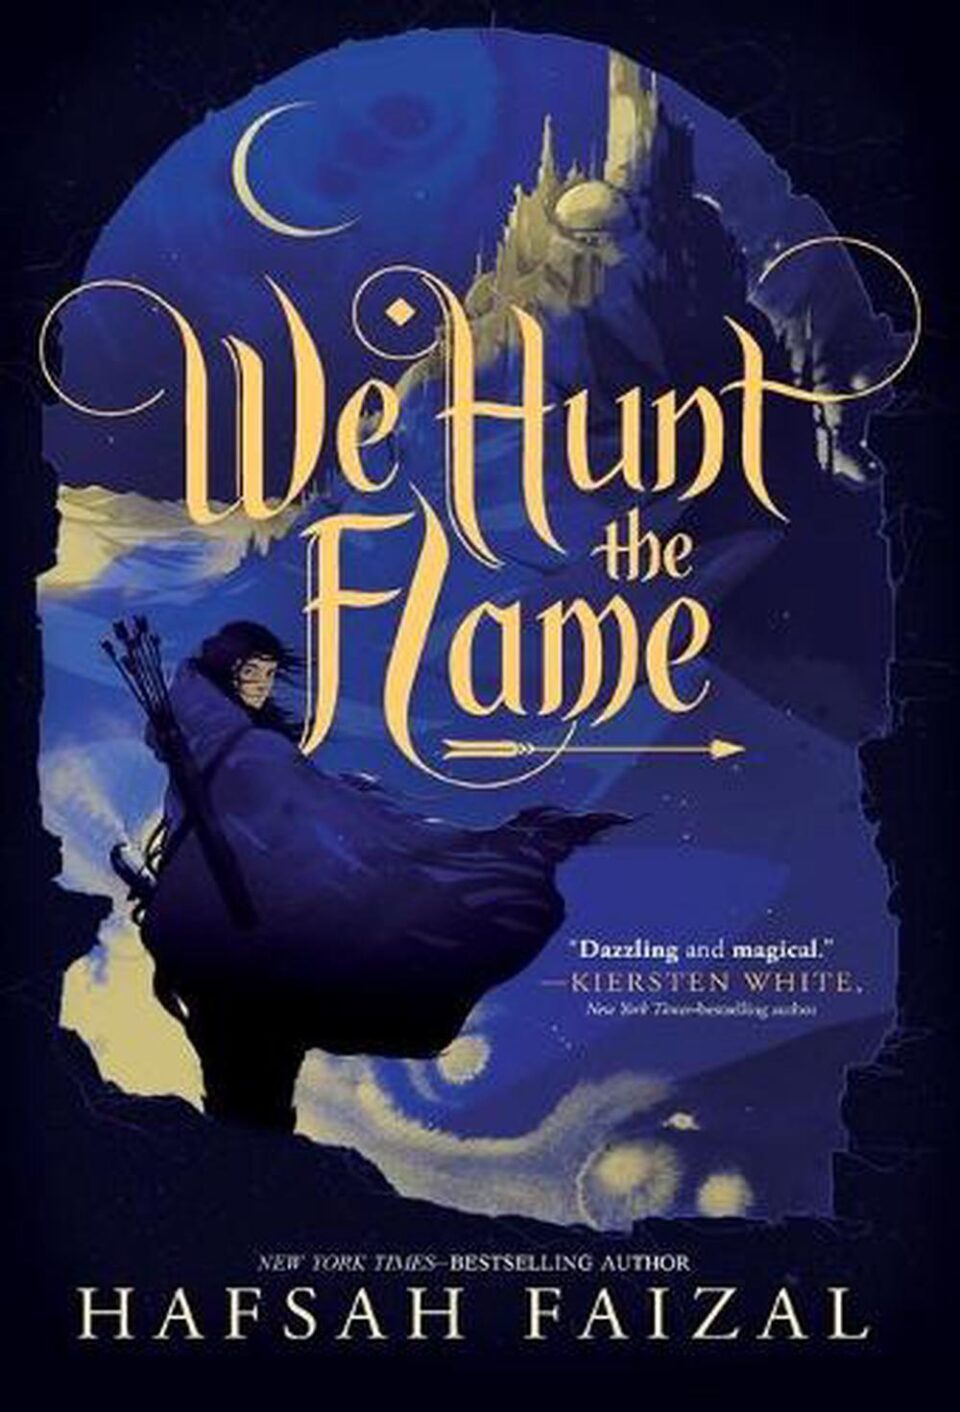 We hunt the flame - retro di copertina di Catturiamo la fiamma
